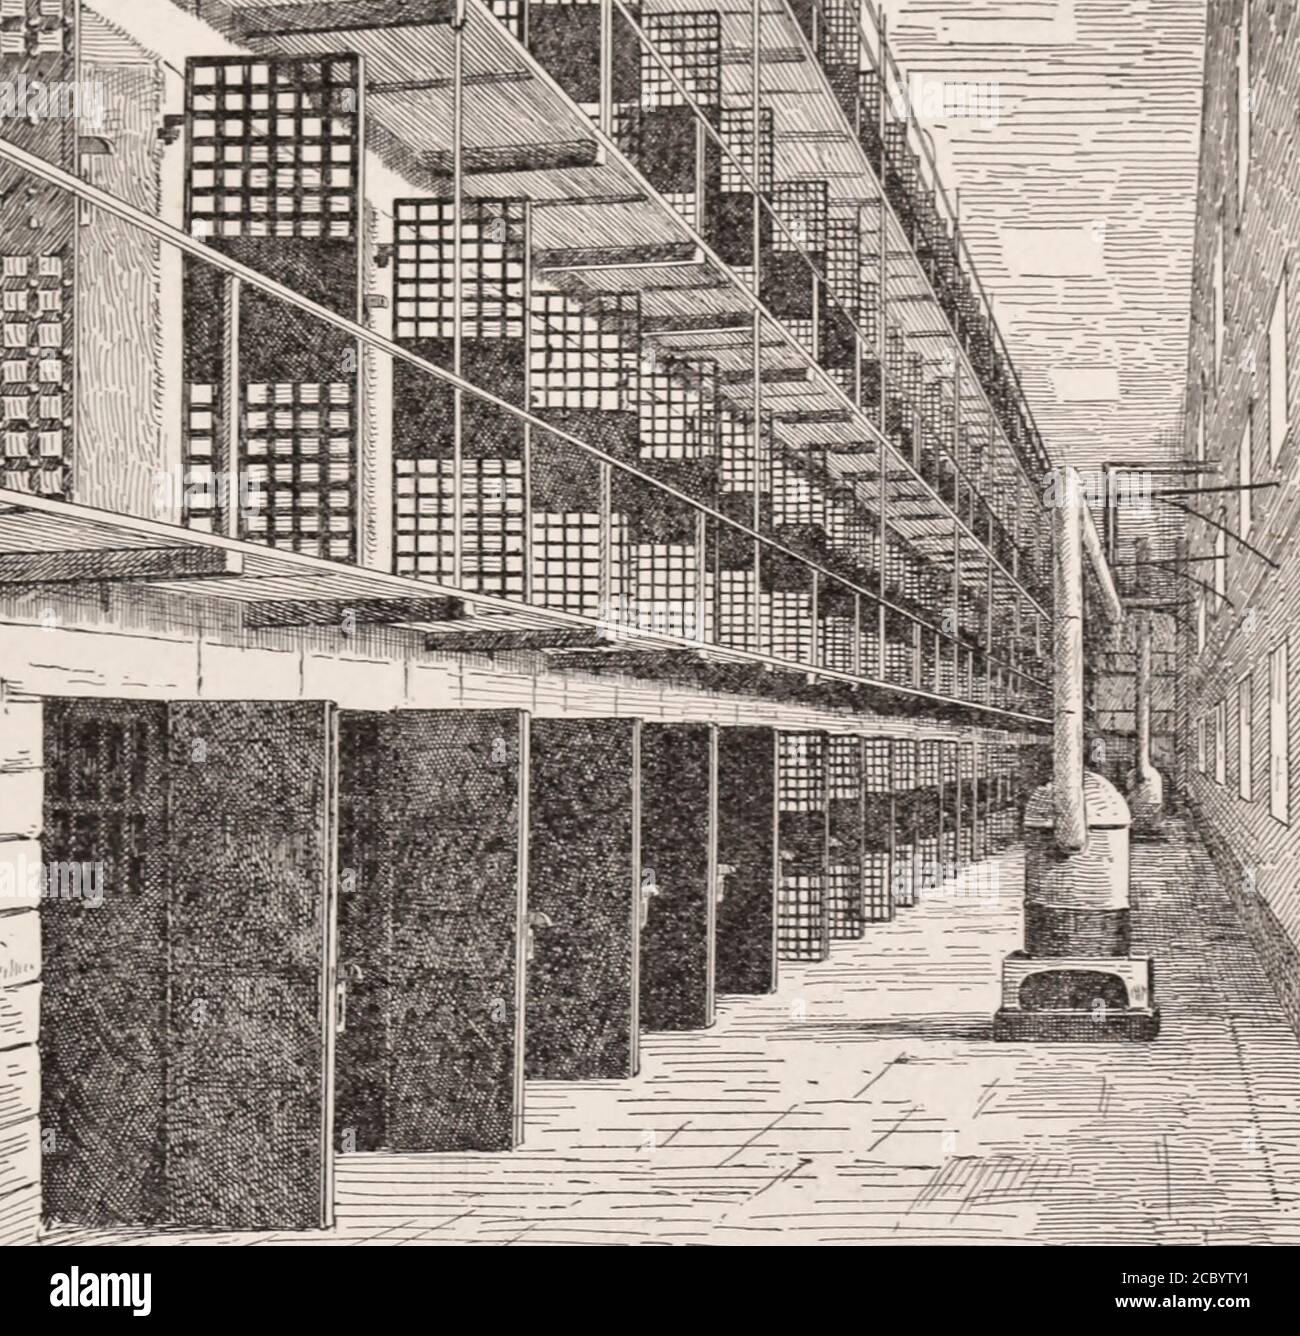 Cellules de prisonnier dans le pénitencier, Blackwell's Island, New York, vers 1892 Banque D'Images